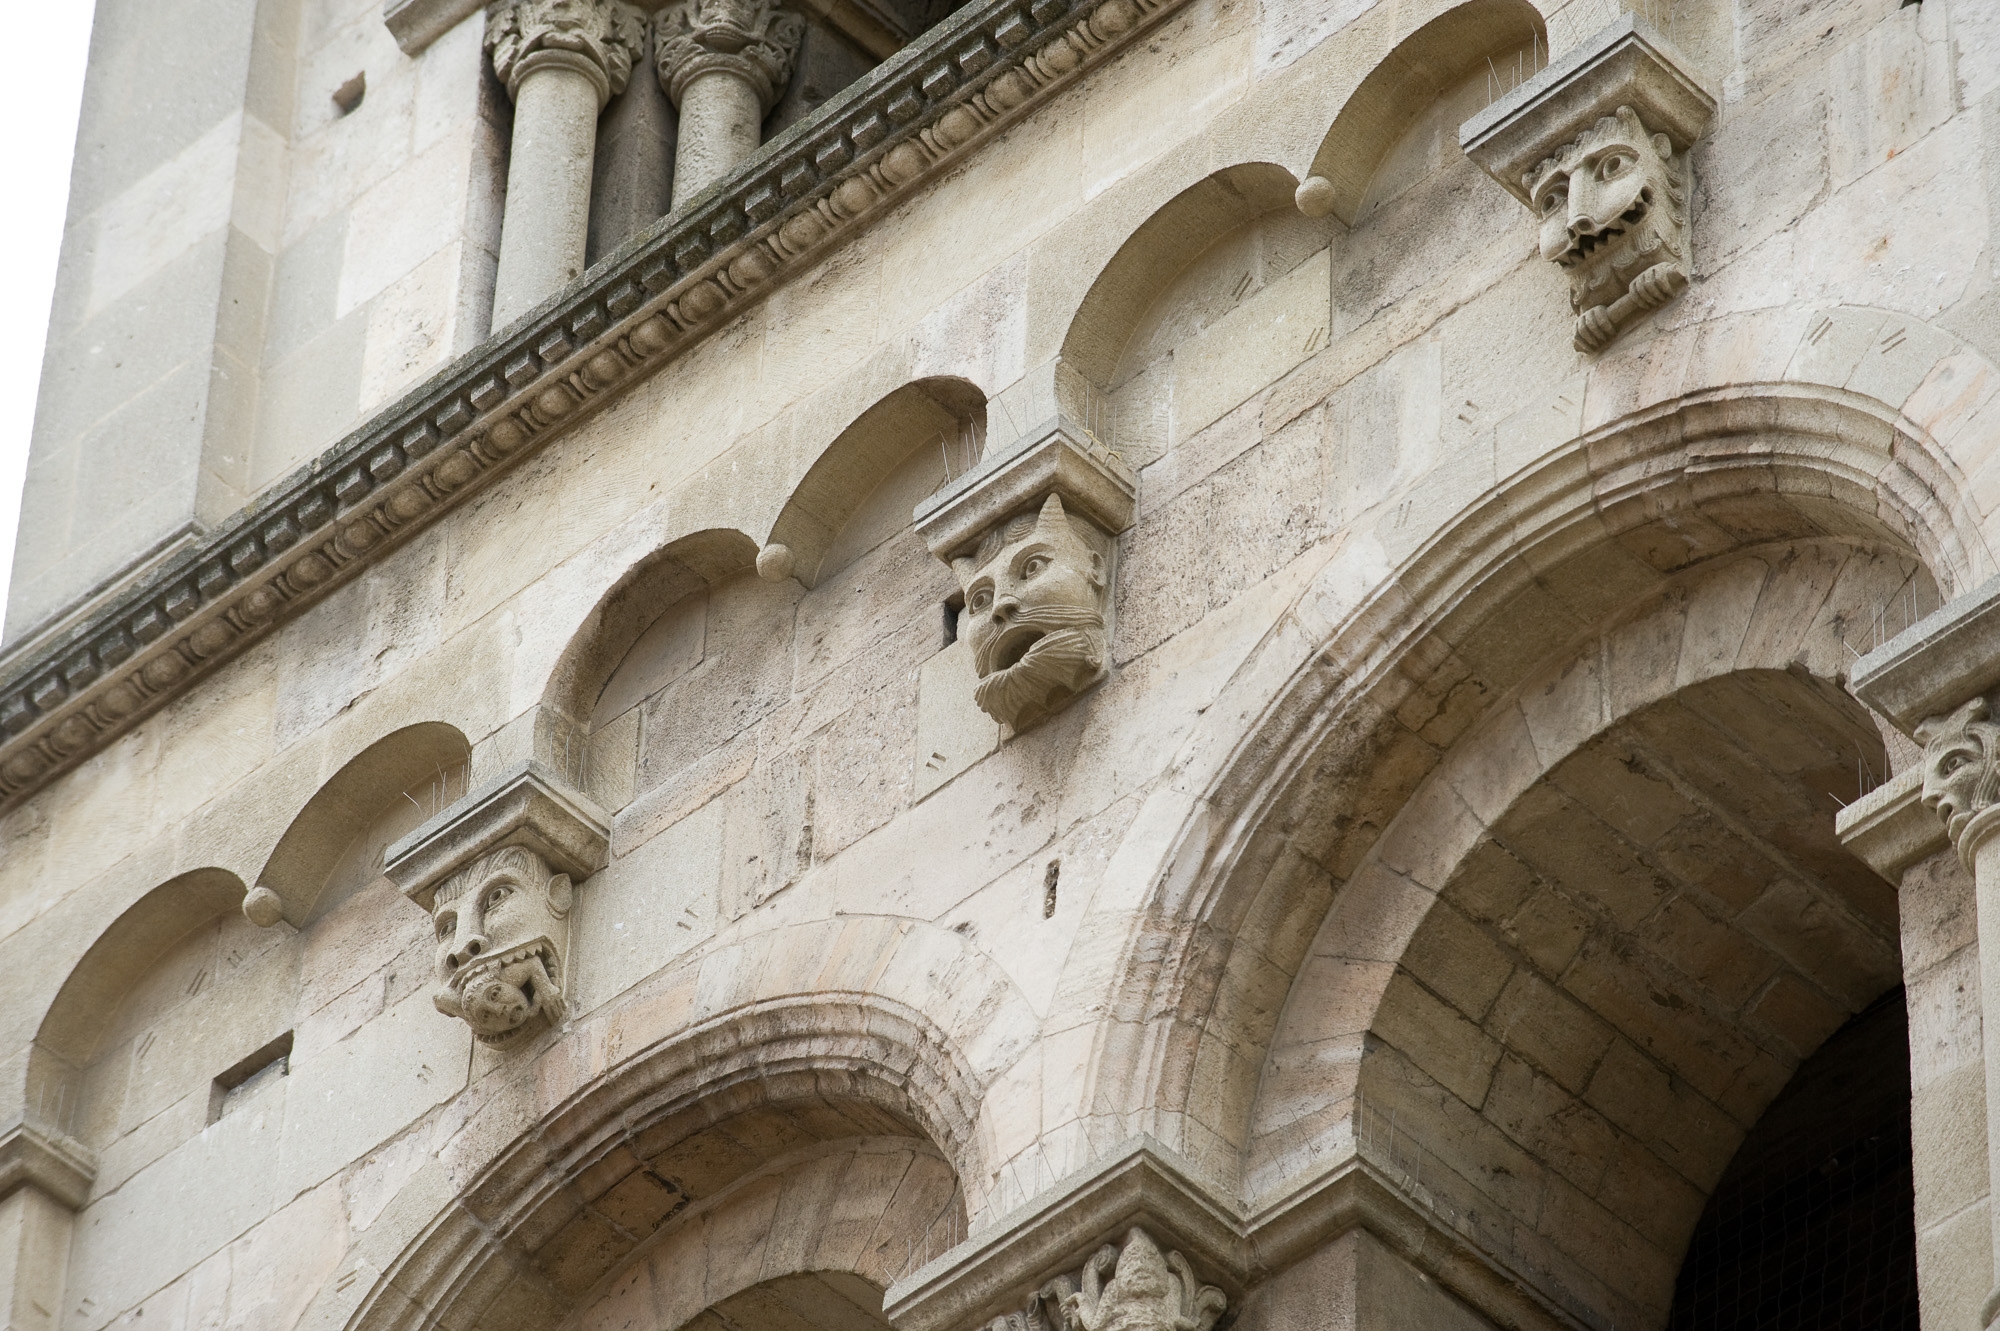 Le clocher de l'église Saint-André-le-Bas., avec ses têtes monstrueuses taillées dans les consoles du clocher.